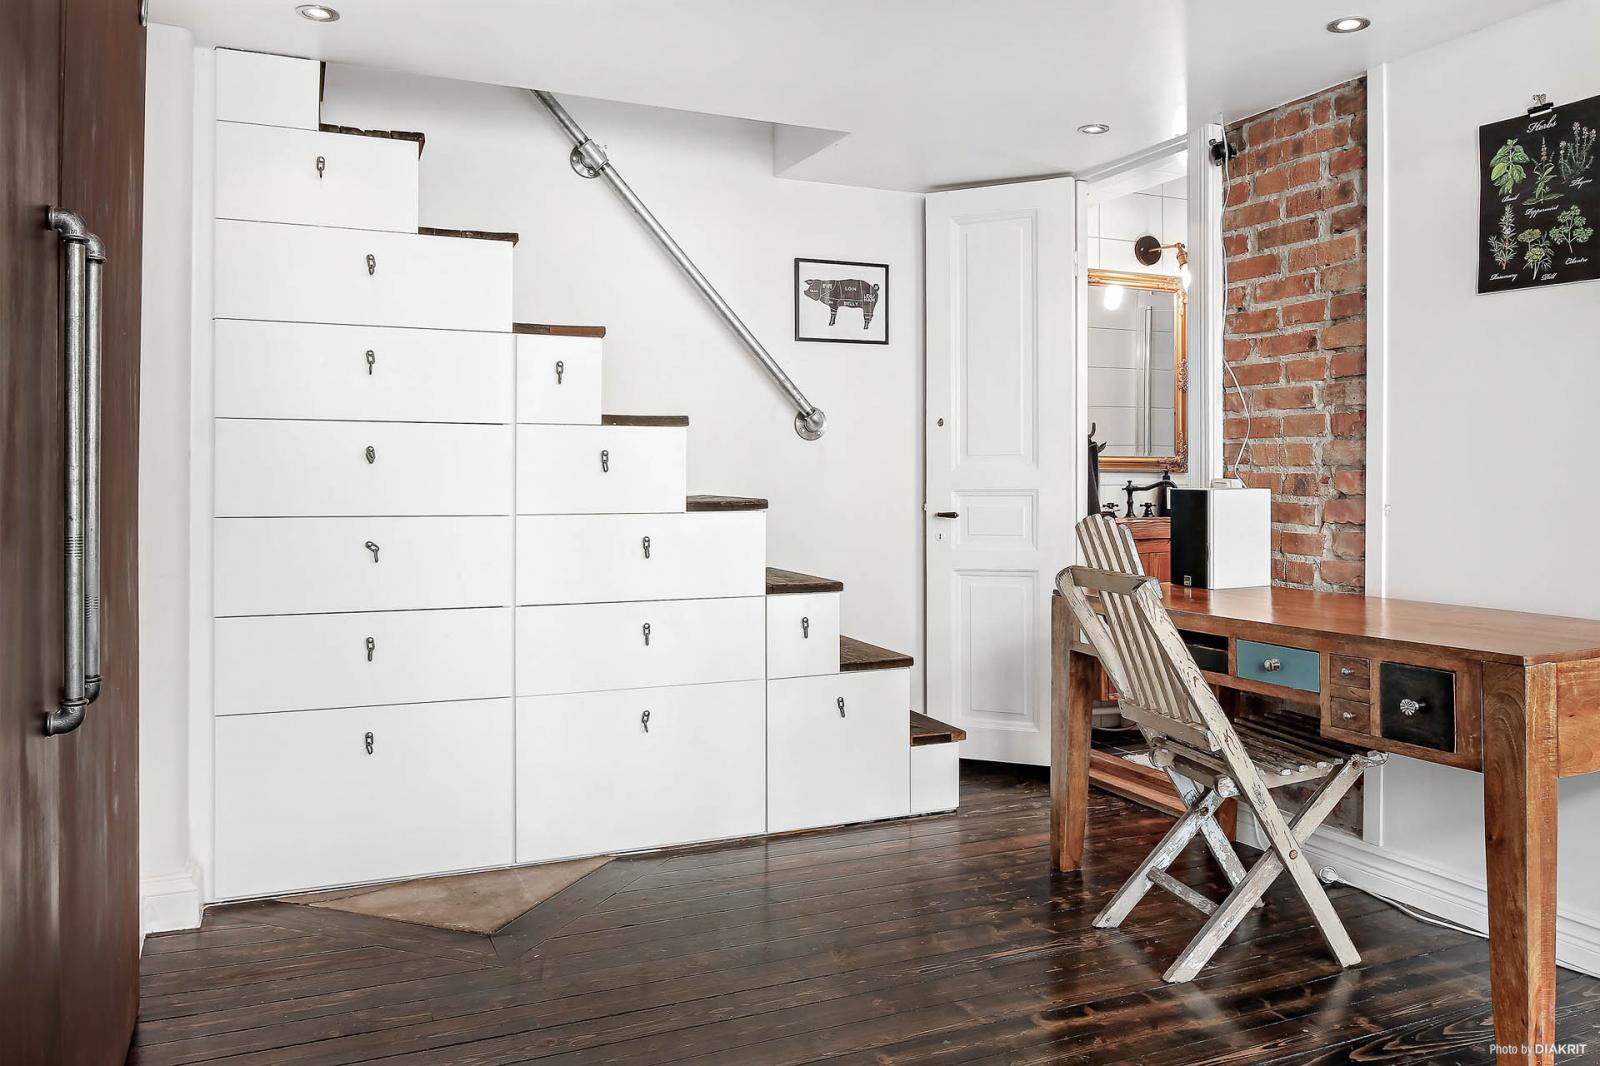 Hình ảnh tủ ngăn kéo màu trắng ở gầm cầu thang, bàn gỗ